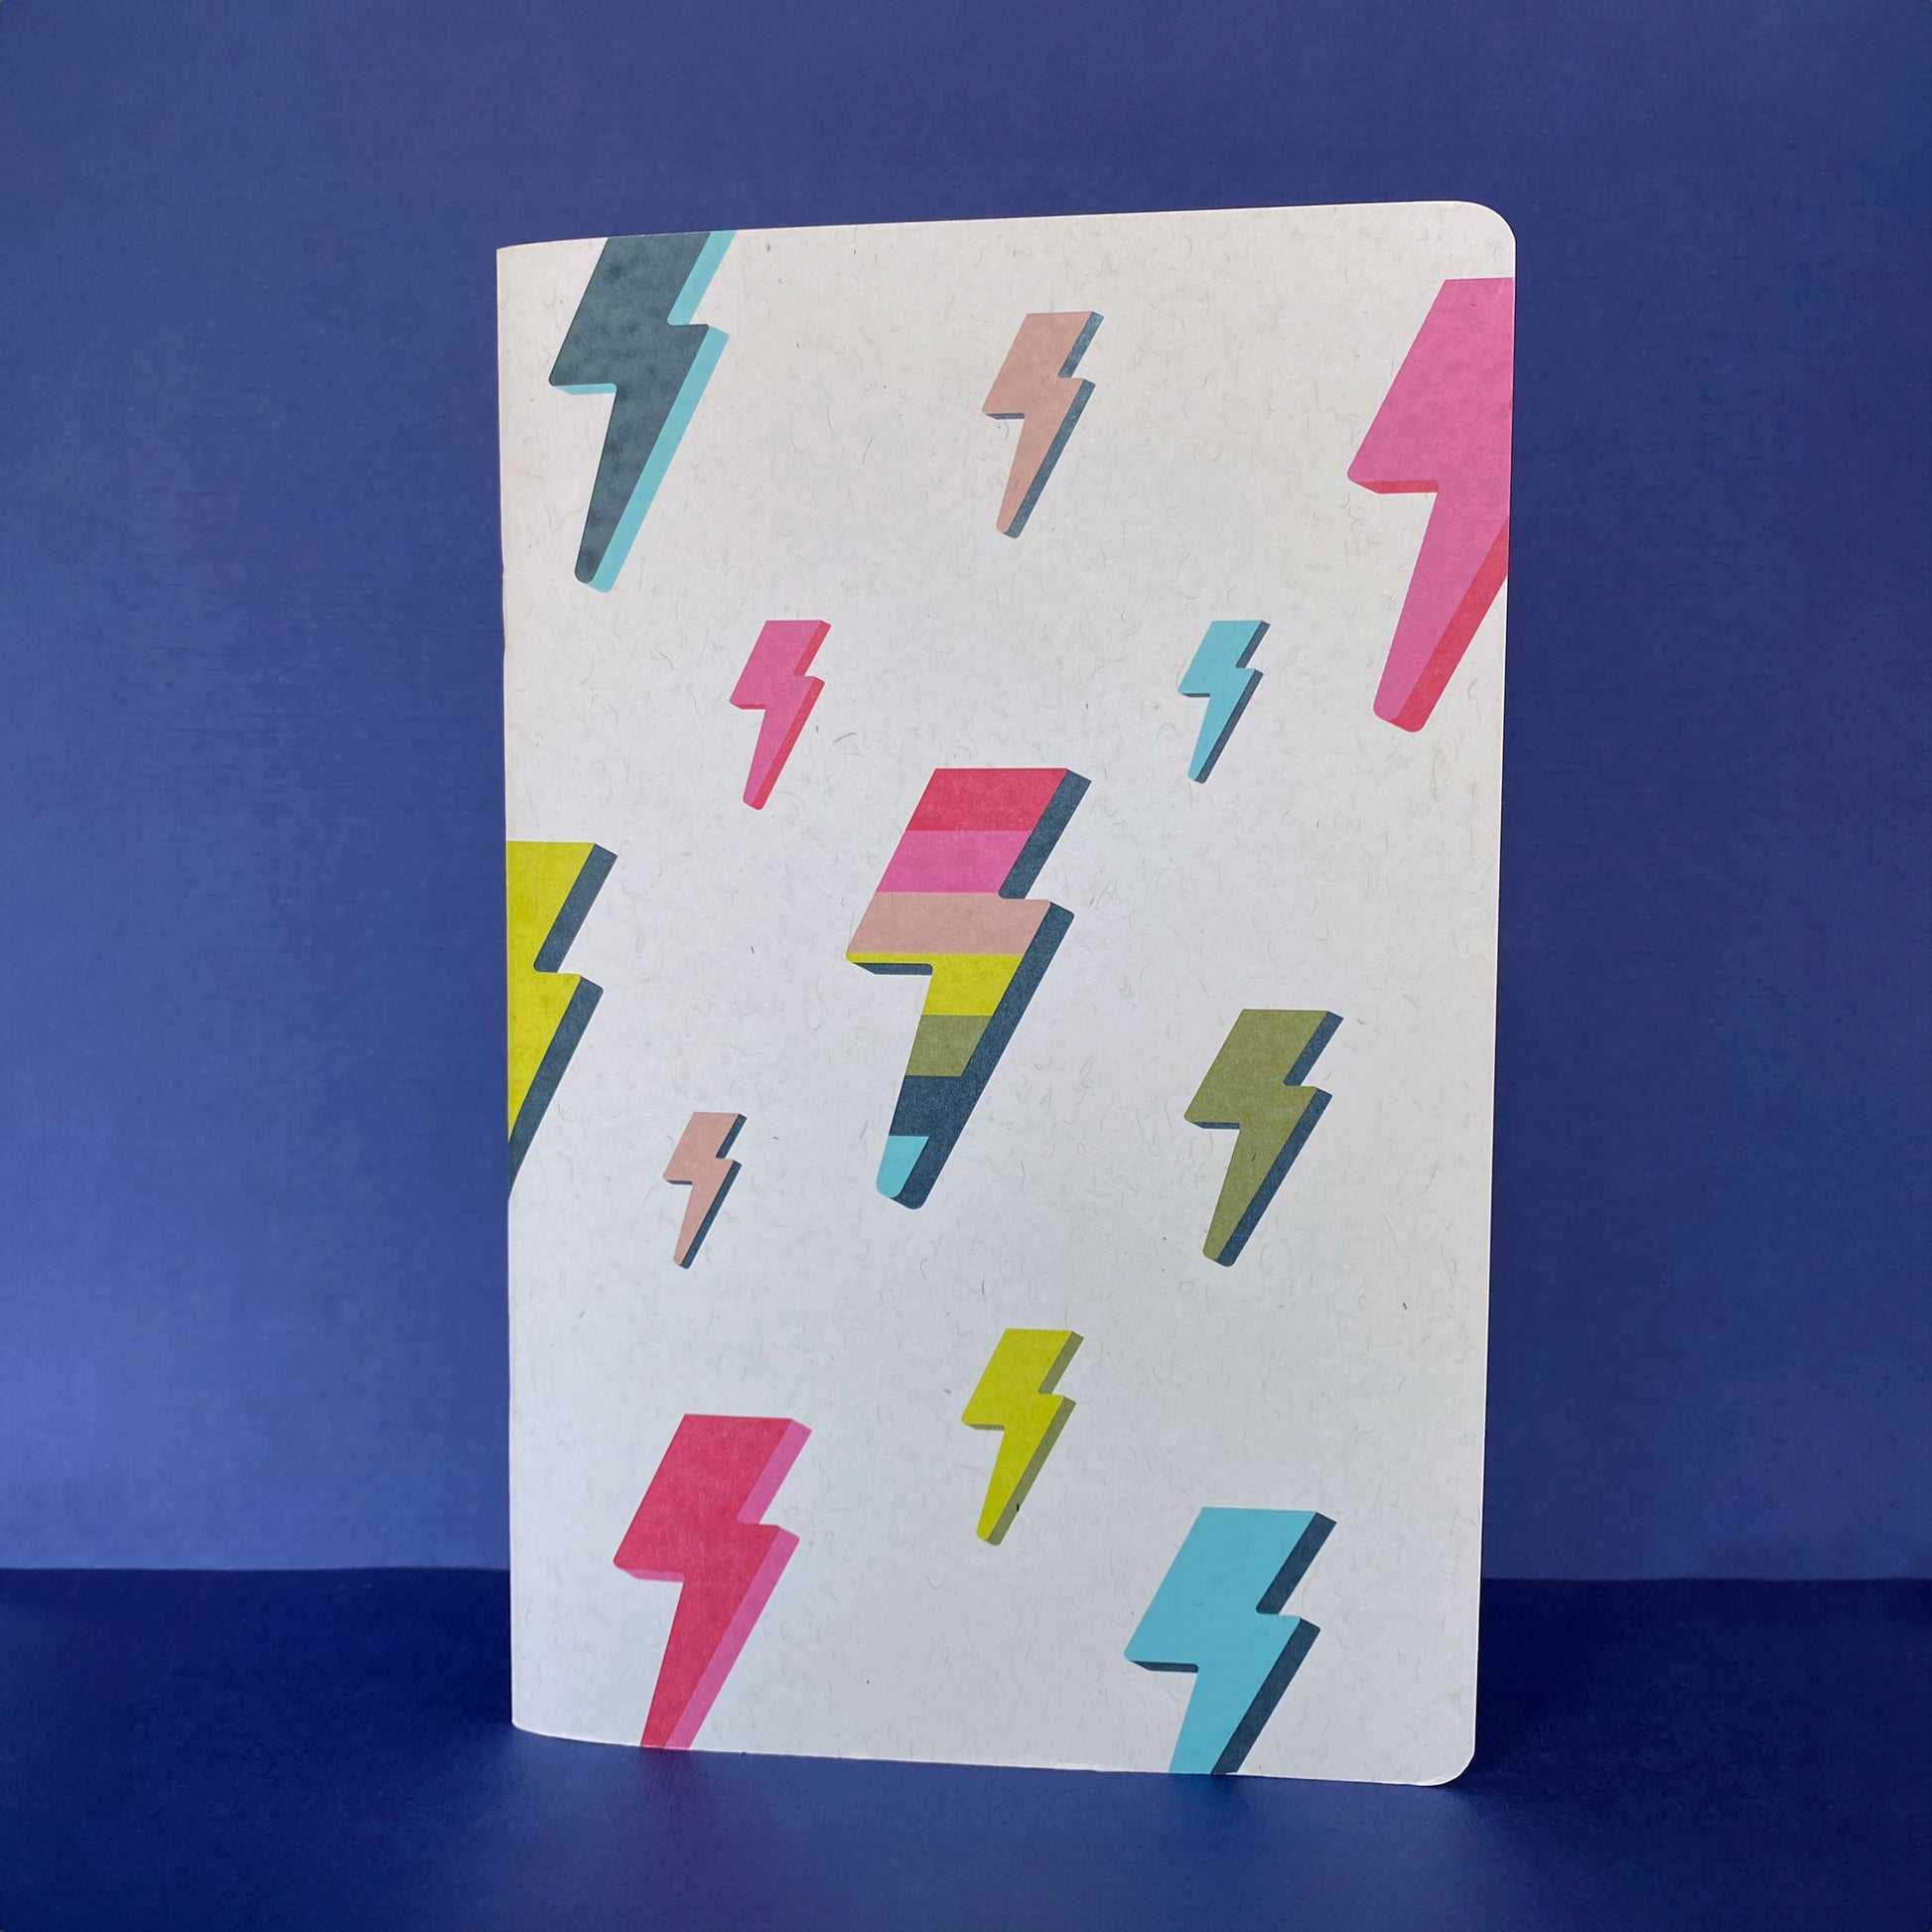 Lightning Bolt Girl Power Journal Blank Pages Notebook Sketchbook 